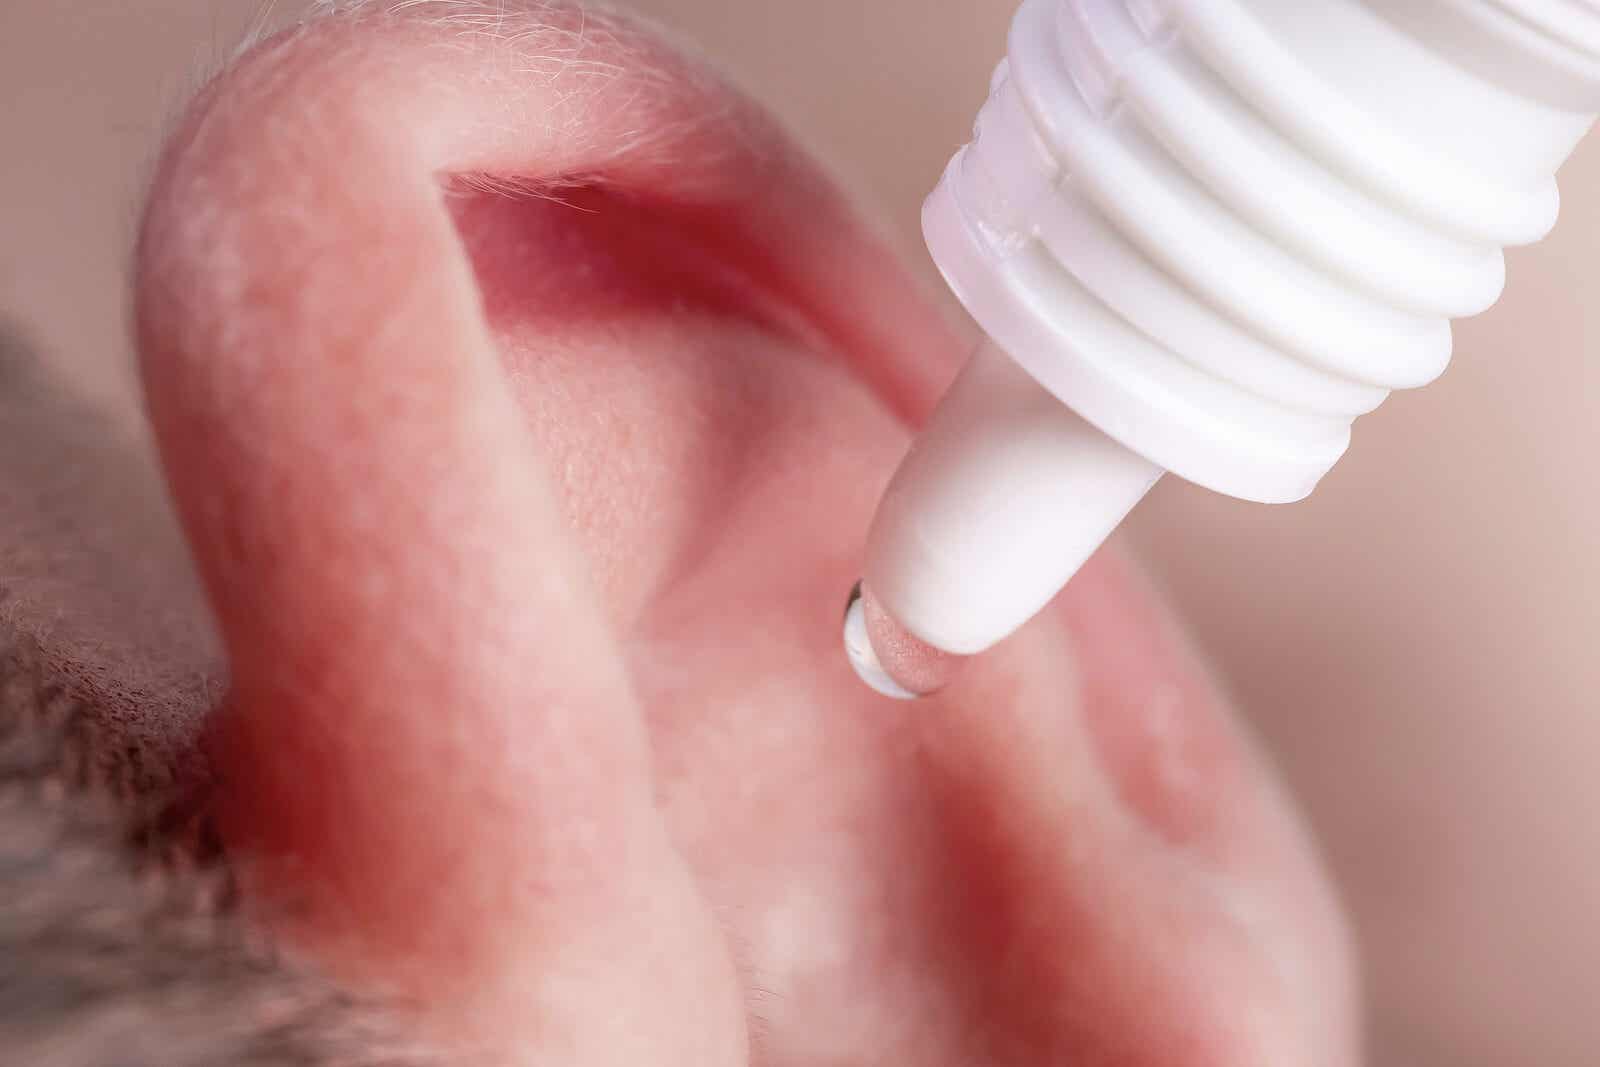 Aplicación de gotas en el oído.